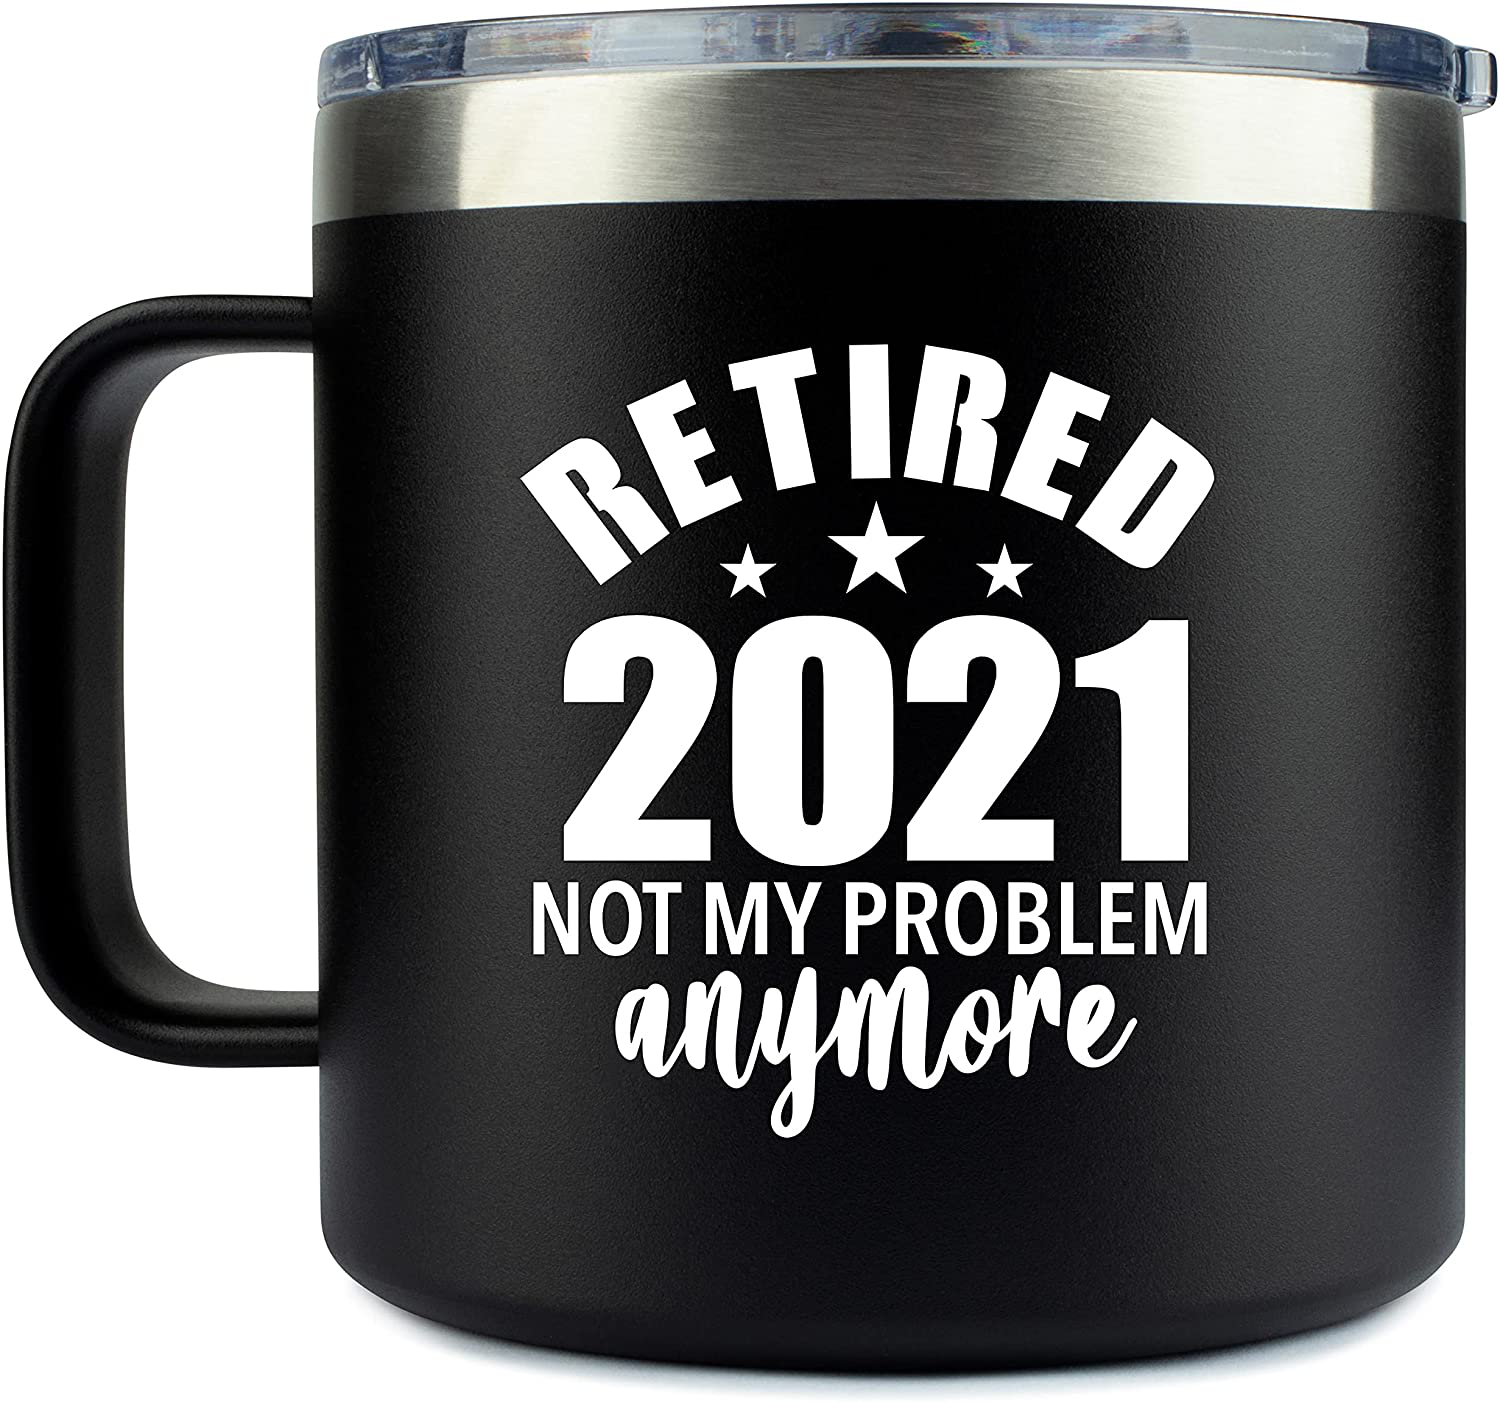 Retirement Gifts for Men - Coffee Mug Tumbler Stainless Steel 14oz - Gift Idea for Men, Women, Retired